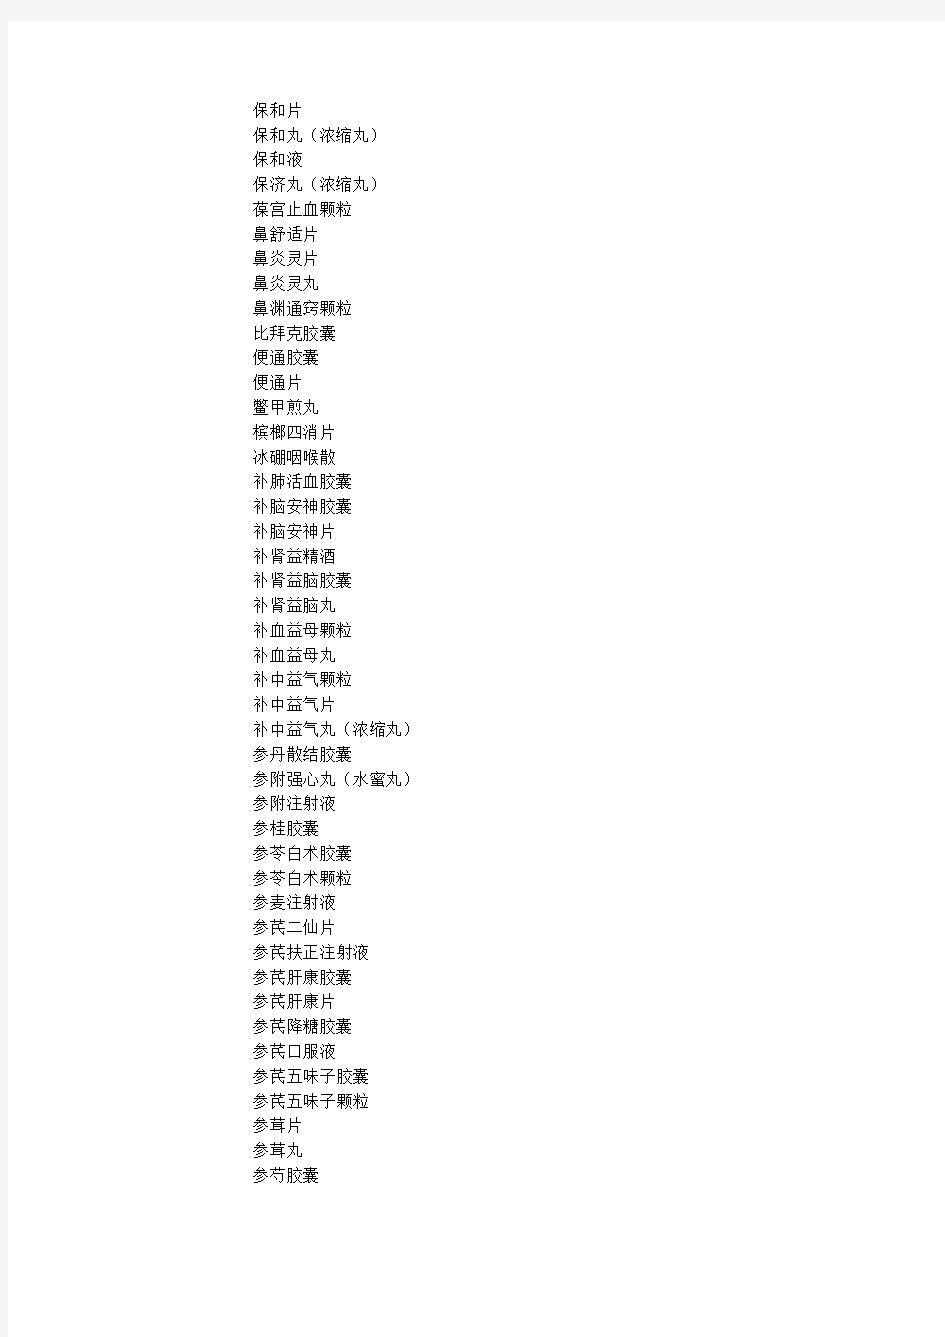 《中国药典》2015年版(一部)拟新增品种名单(第一批)